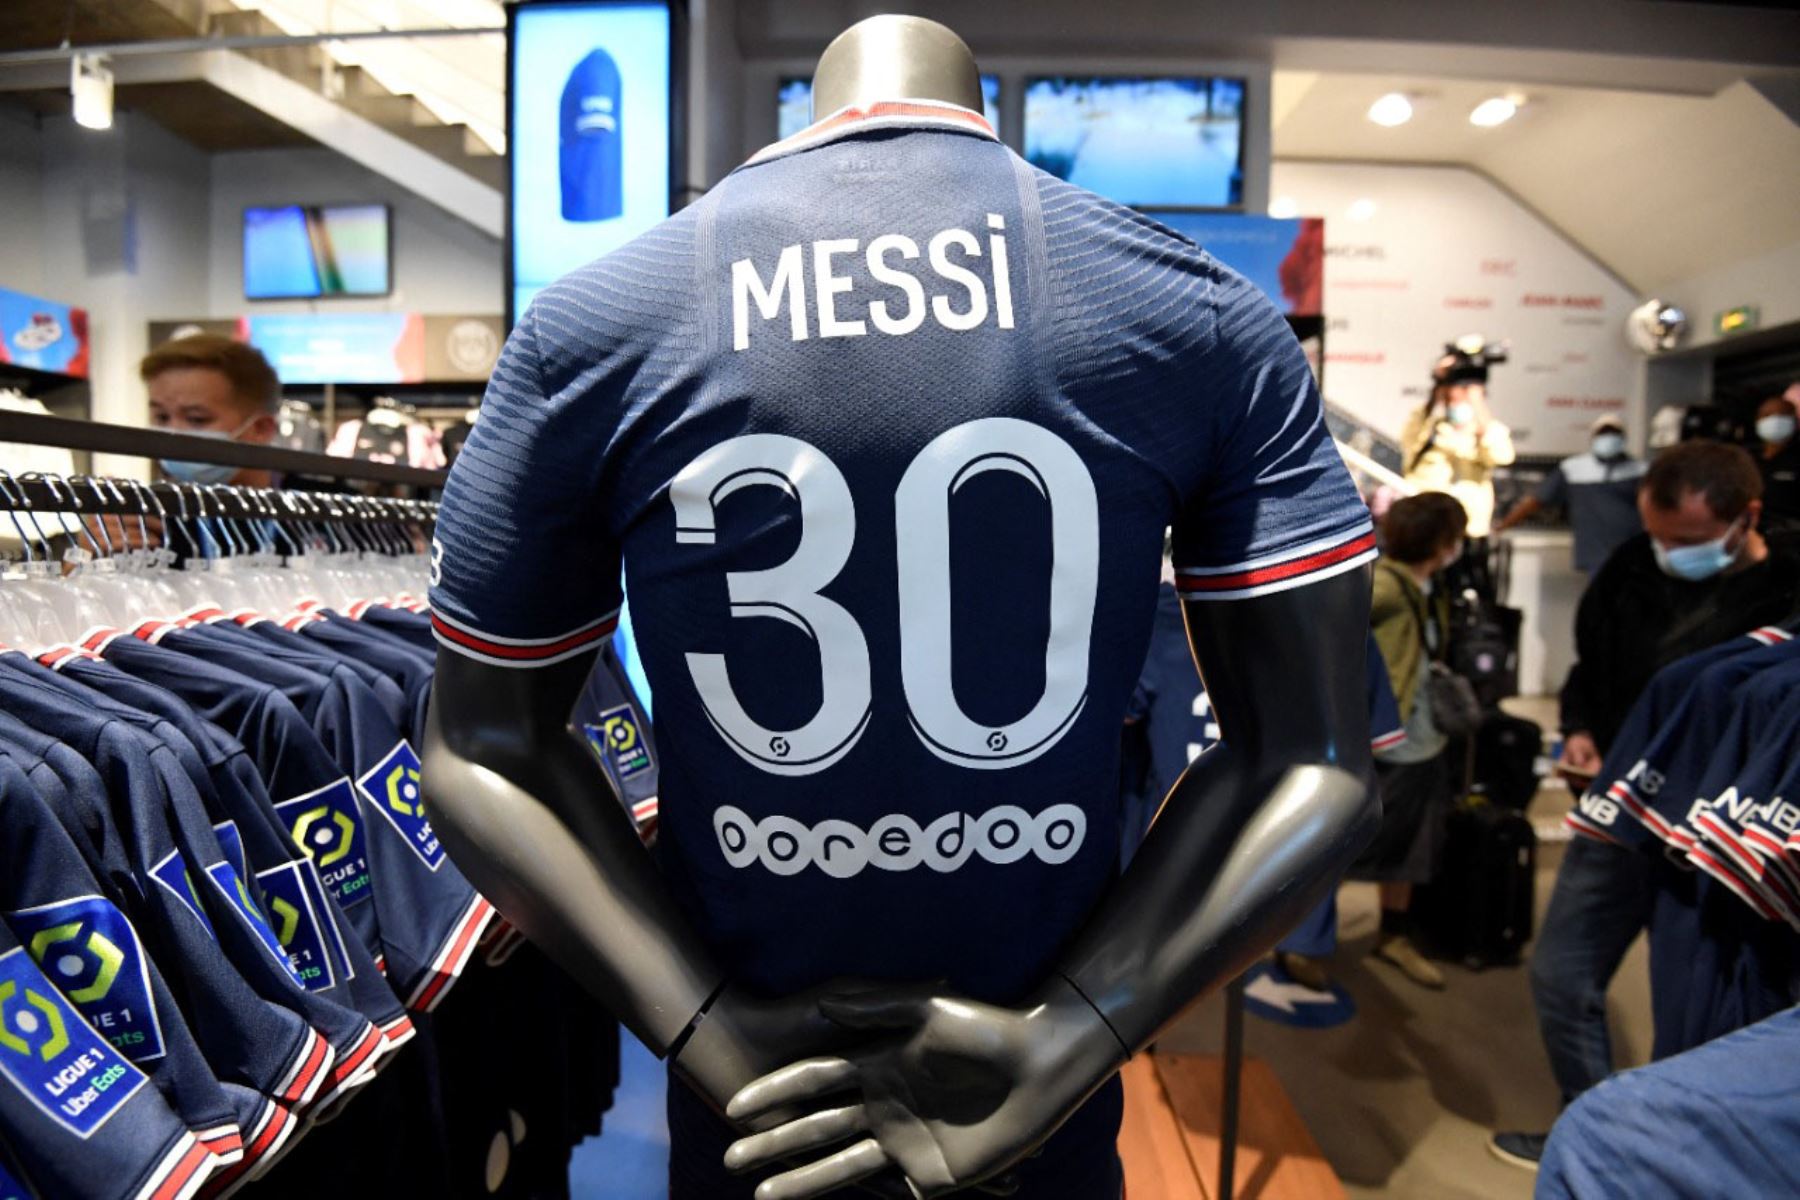 Camisetas del jugador de fútbol argentino del PSG Lionel Messi expuestas a la venta en la tienda del club de fútbol Paris-Saint-Germain (PSG) en la avenida de los Campos Elíseos en París.

Foto:AFP